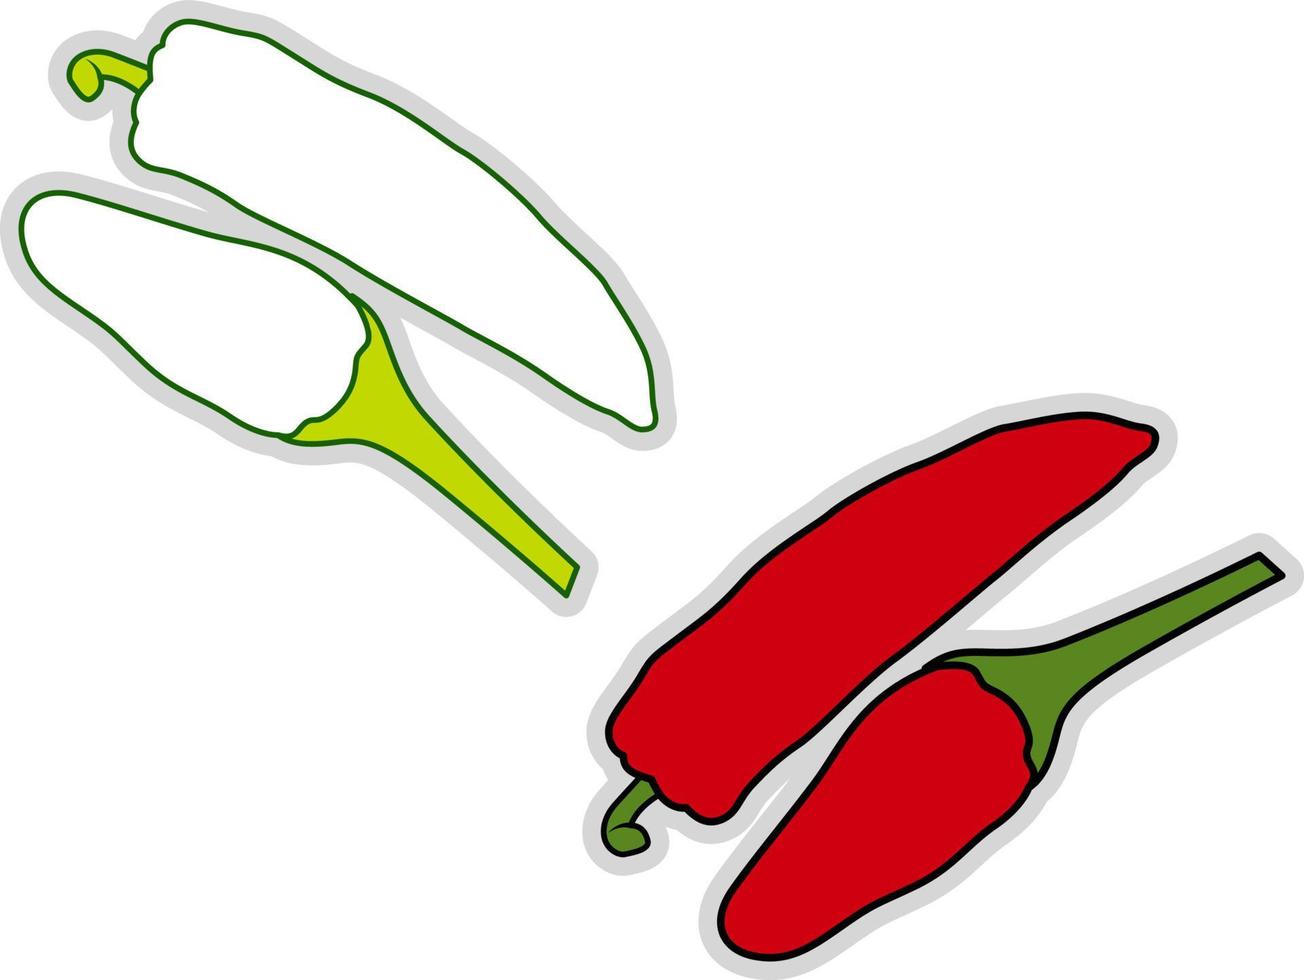 Fresh chilli pepper, illustration, vector on white background.